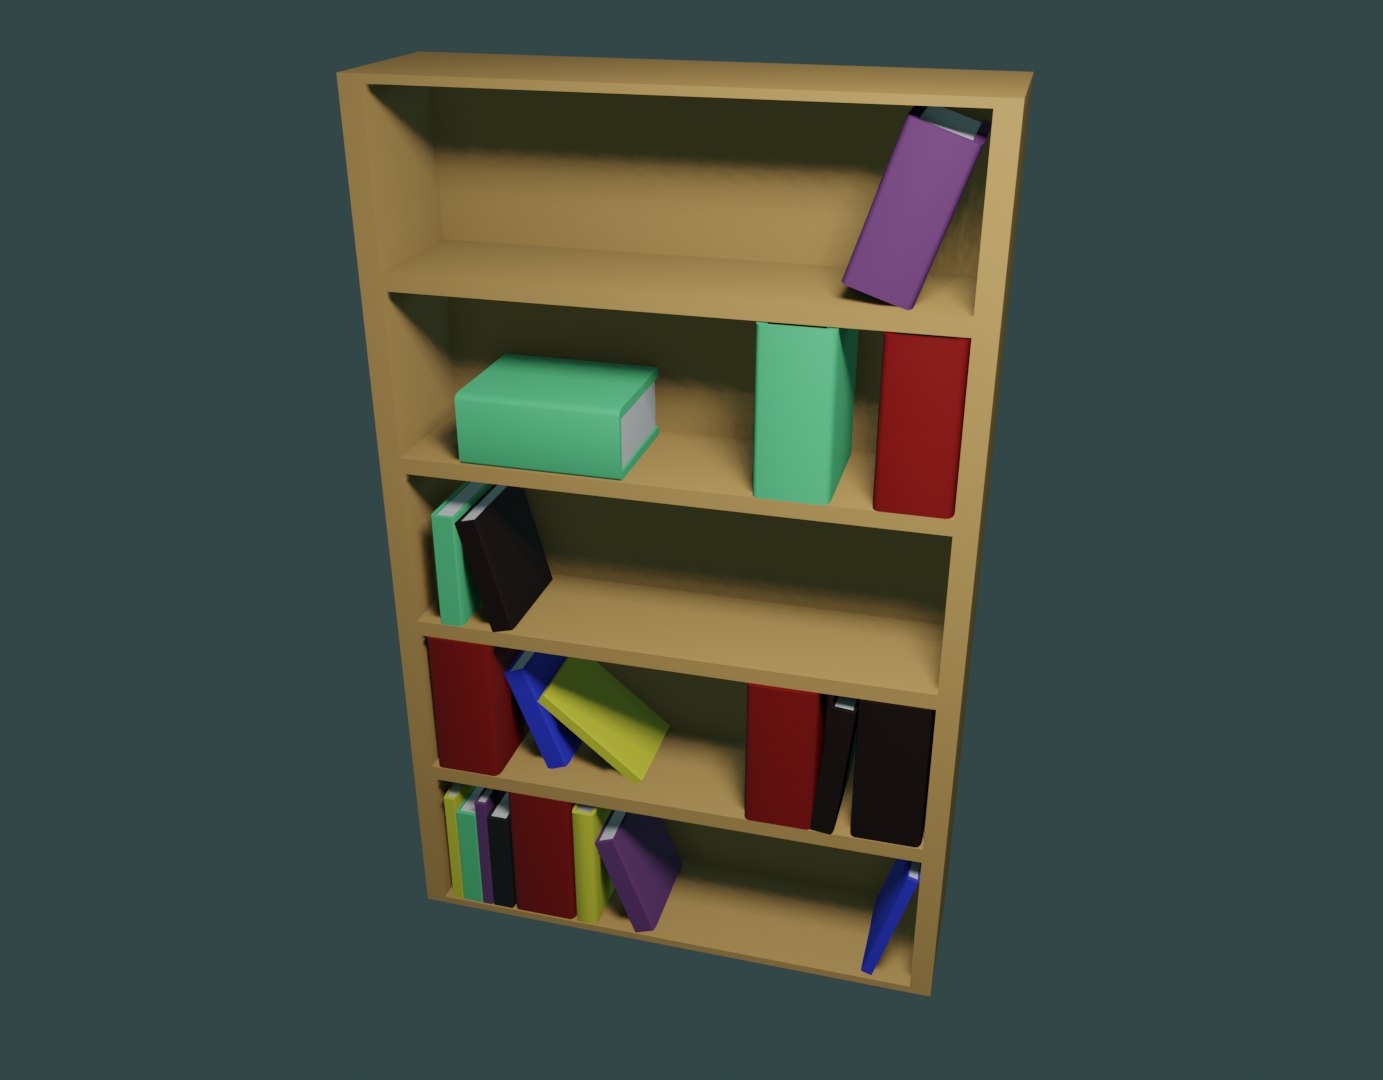 Bookshelf books 3D model TurboSquid 1490526